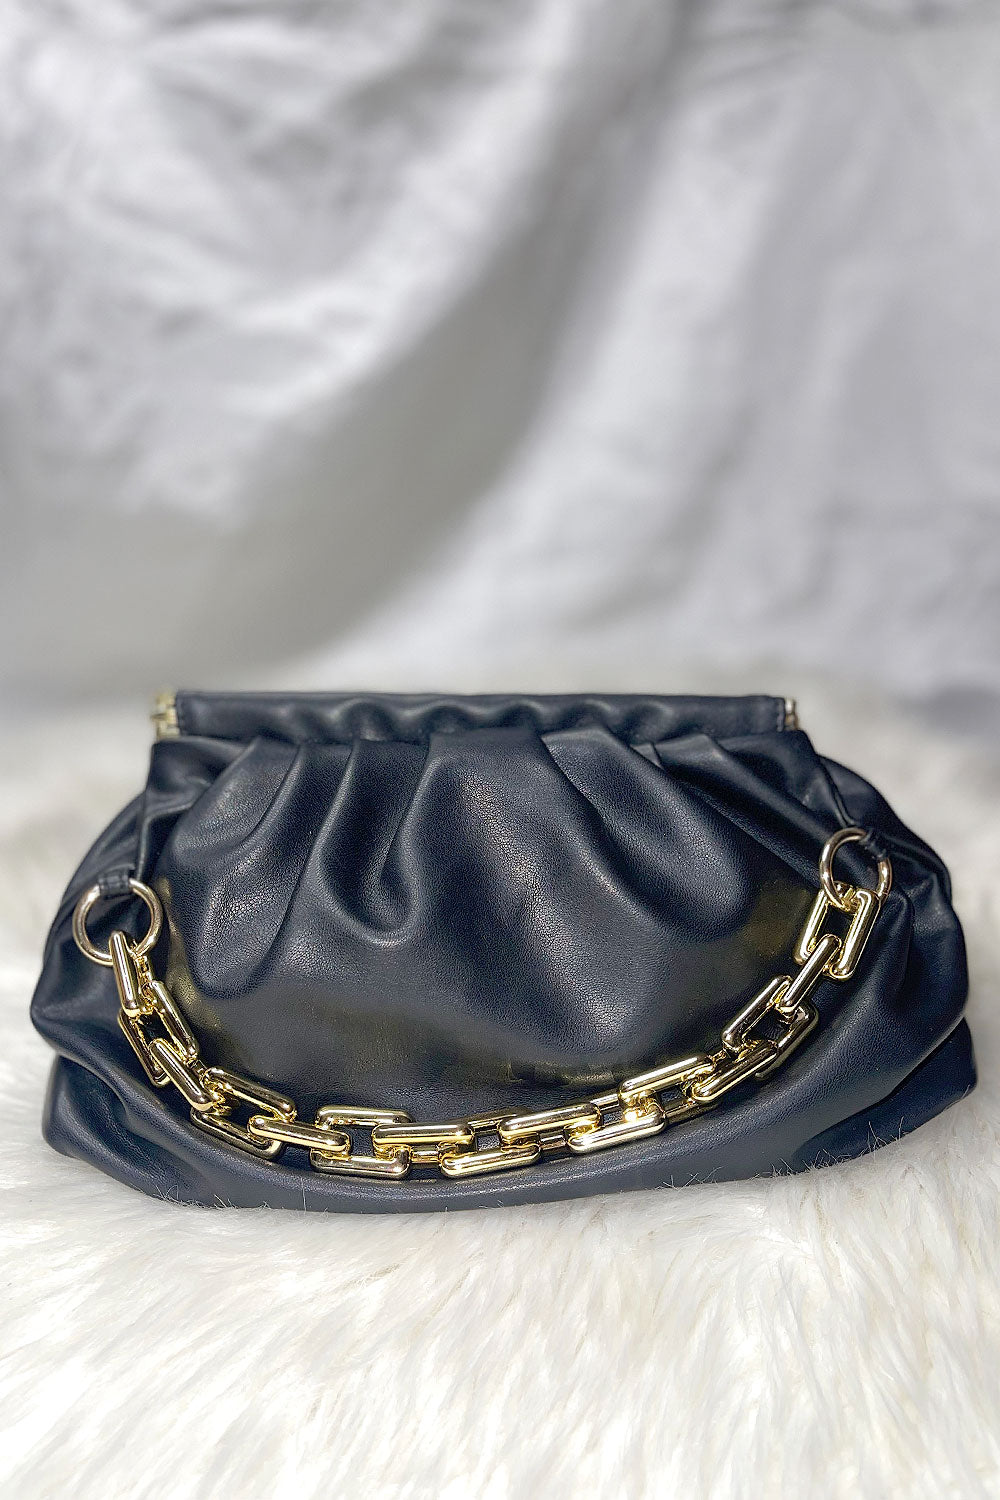 Pietro New York City Skyline - Black Leather Handbag Made in NYC | Pietro  NYC